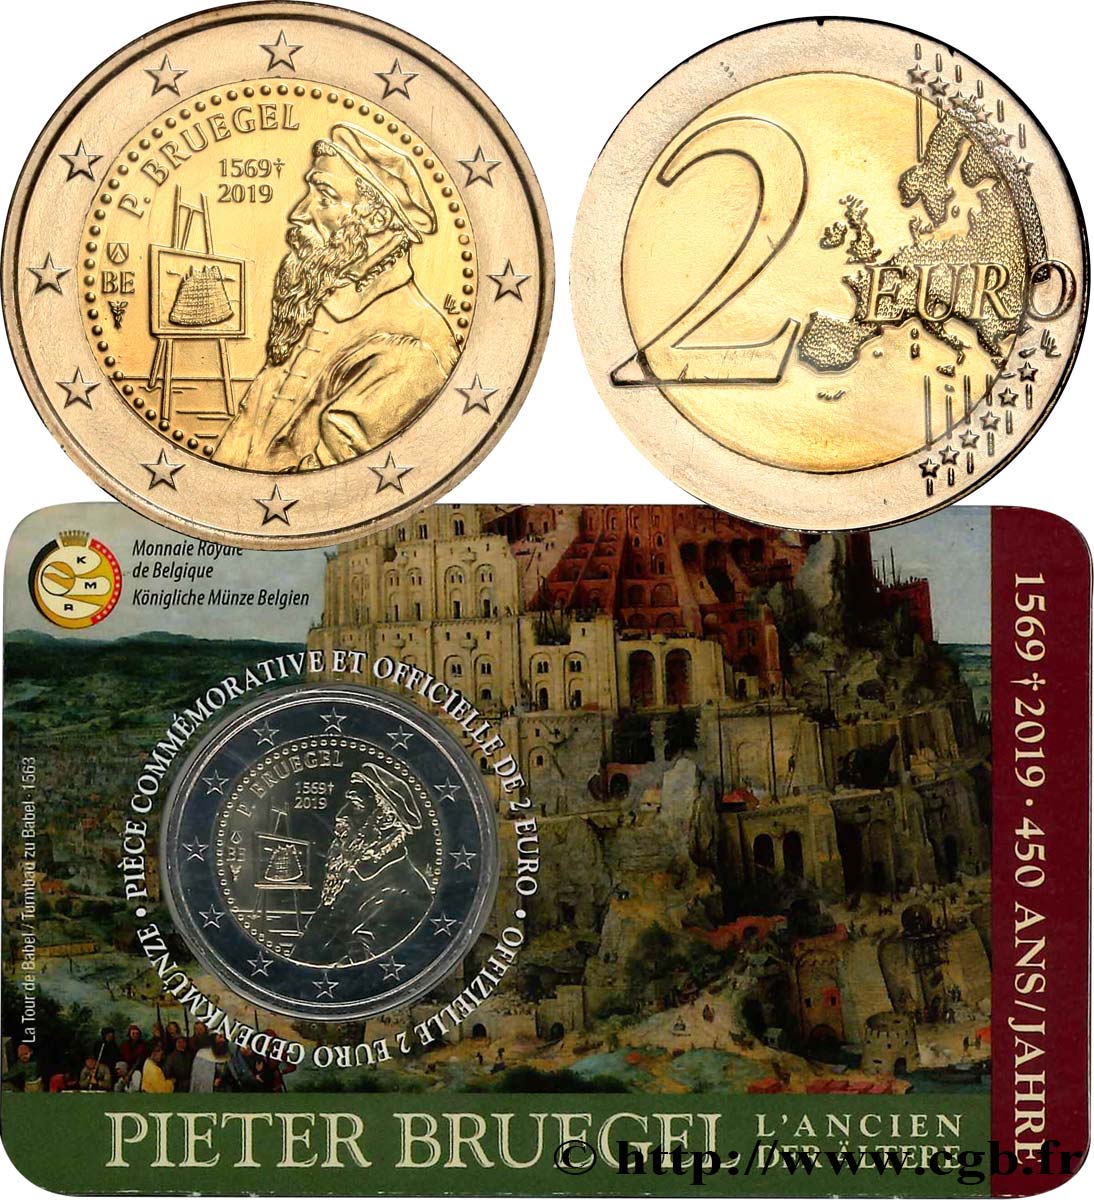 BELGIQUE Coin-card 2 Euro PIETER BRUEGEL - Version française 2019 FDC